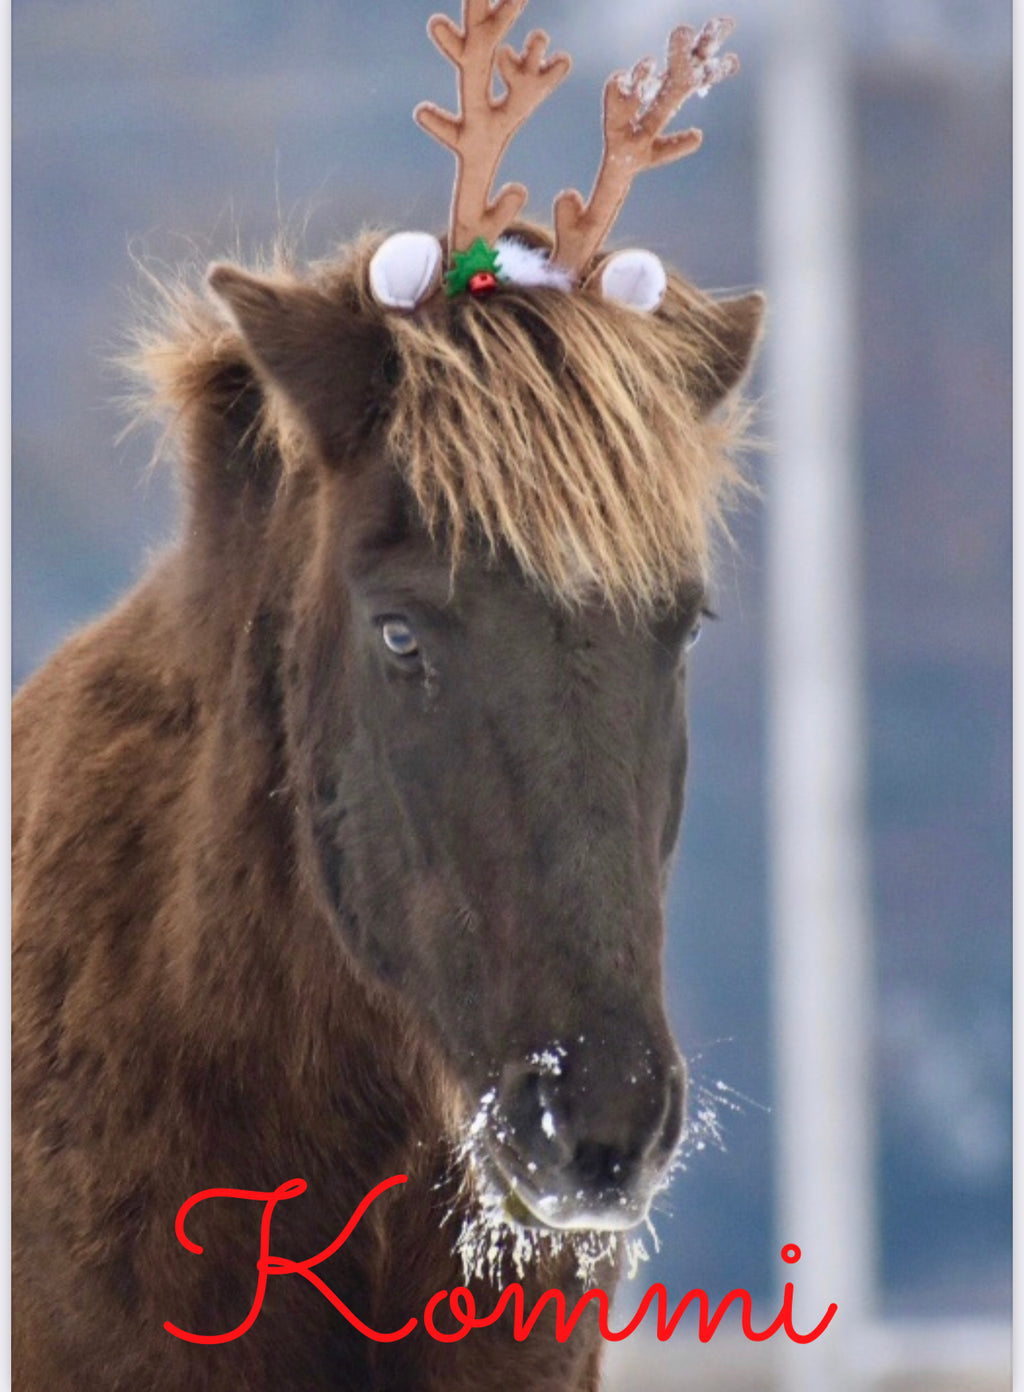 Kommi the Icelandic Reindeer card